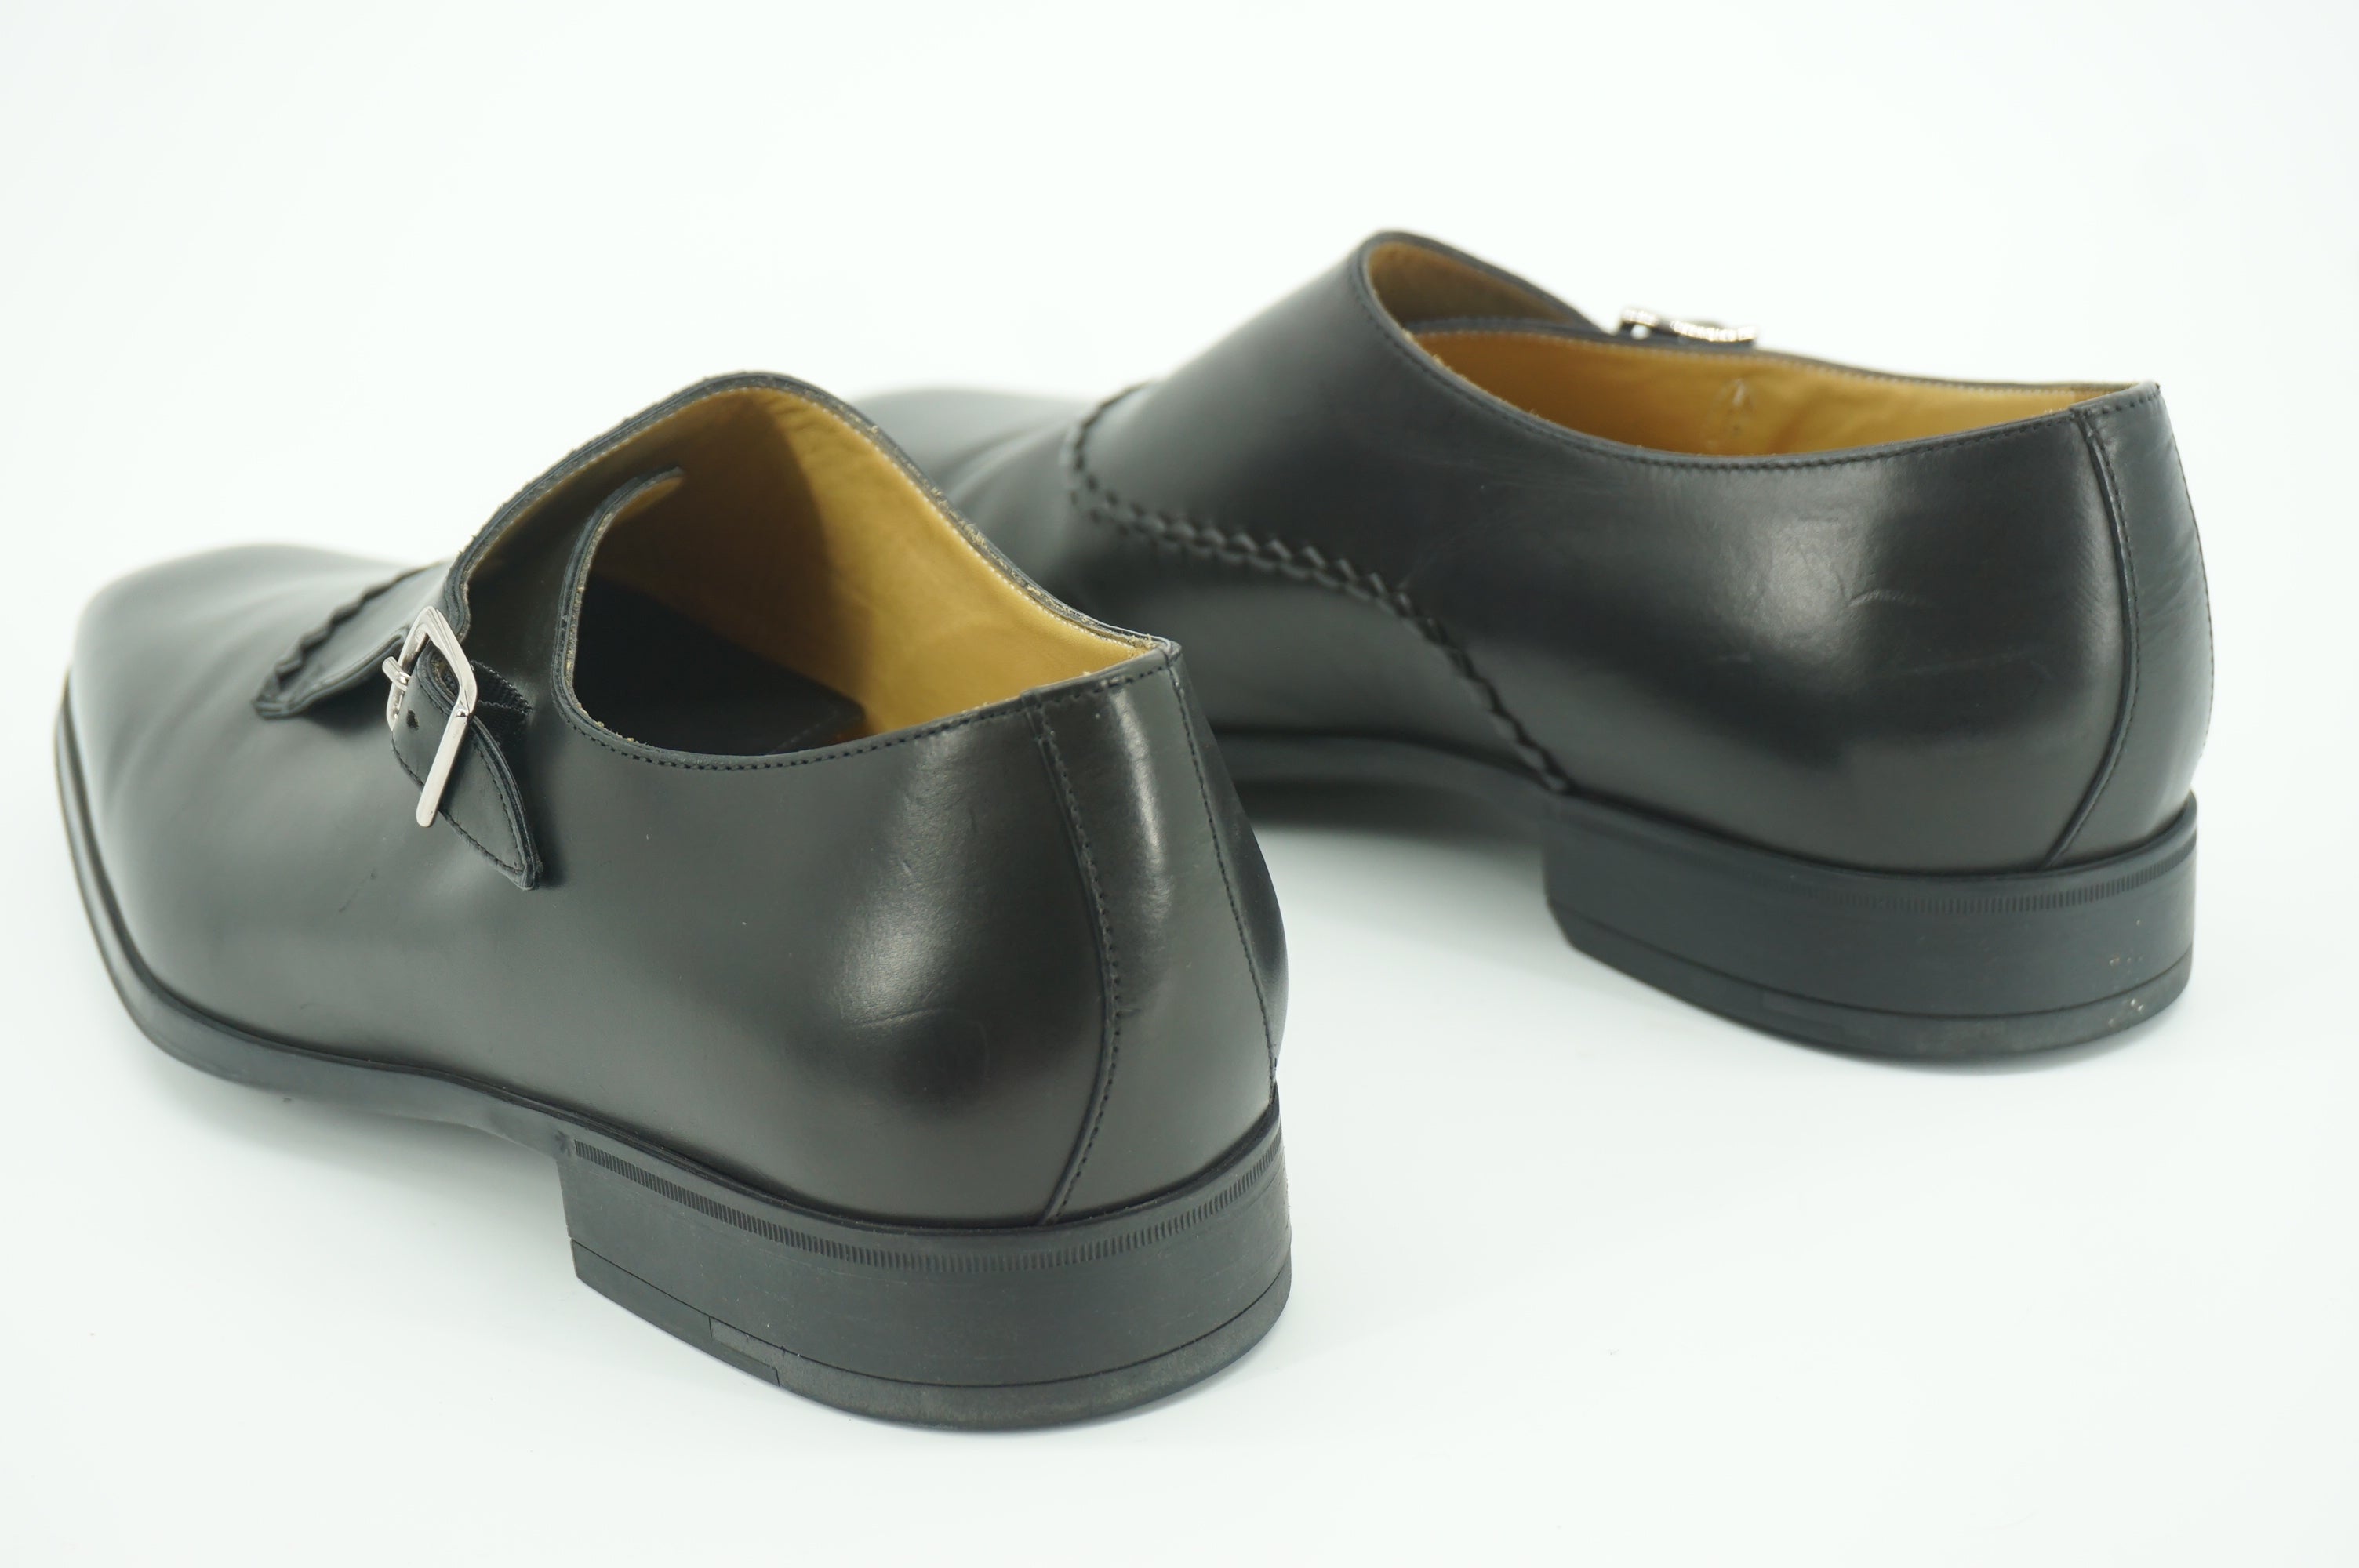 Sutor Mantellassi Marzio Black Leather Monk Strap Loafers Size 10 slip on $565